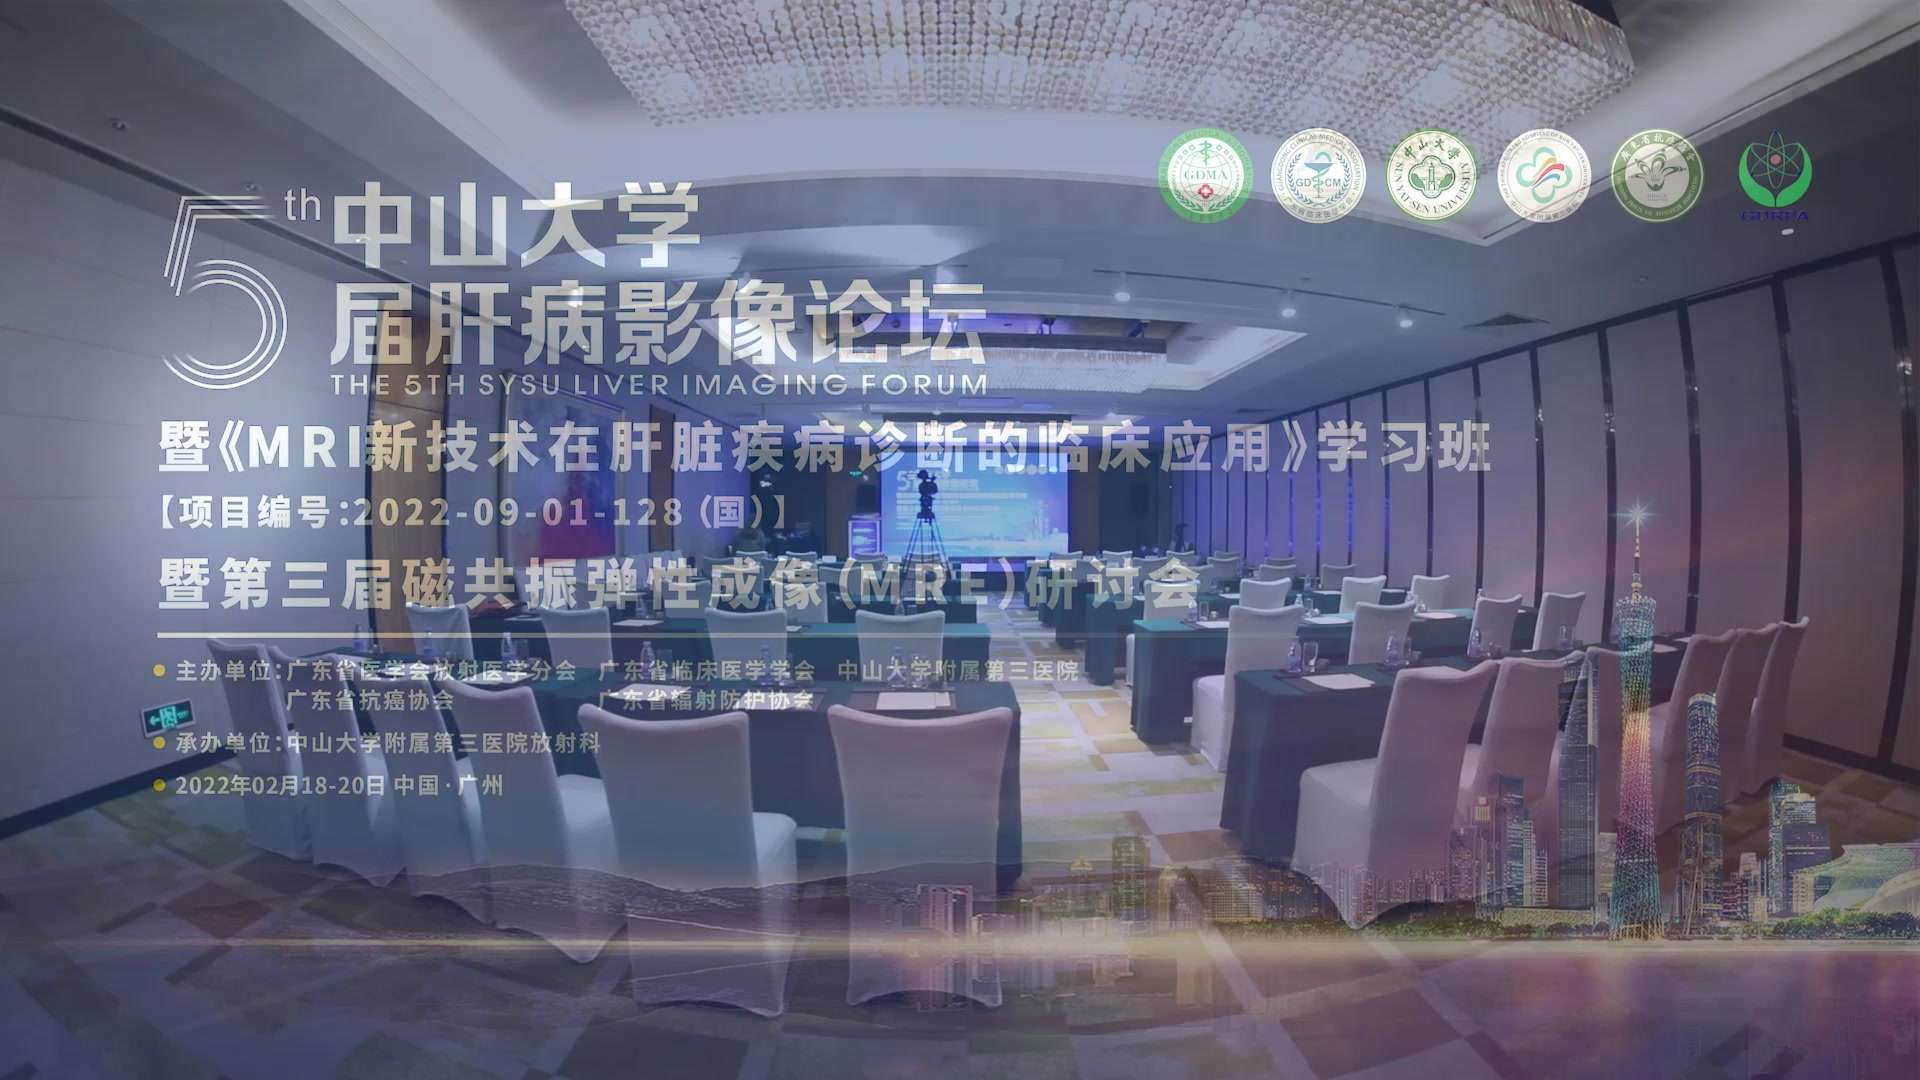 2022.2.19 中山大学第五届肝病影像论坛 花絮